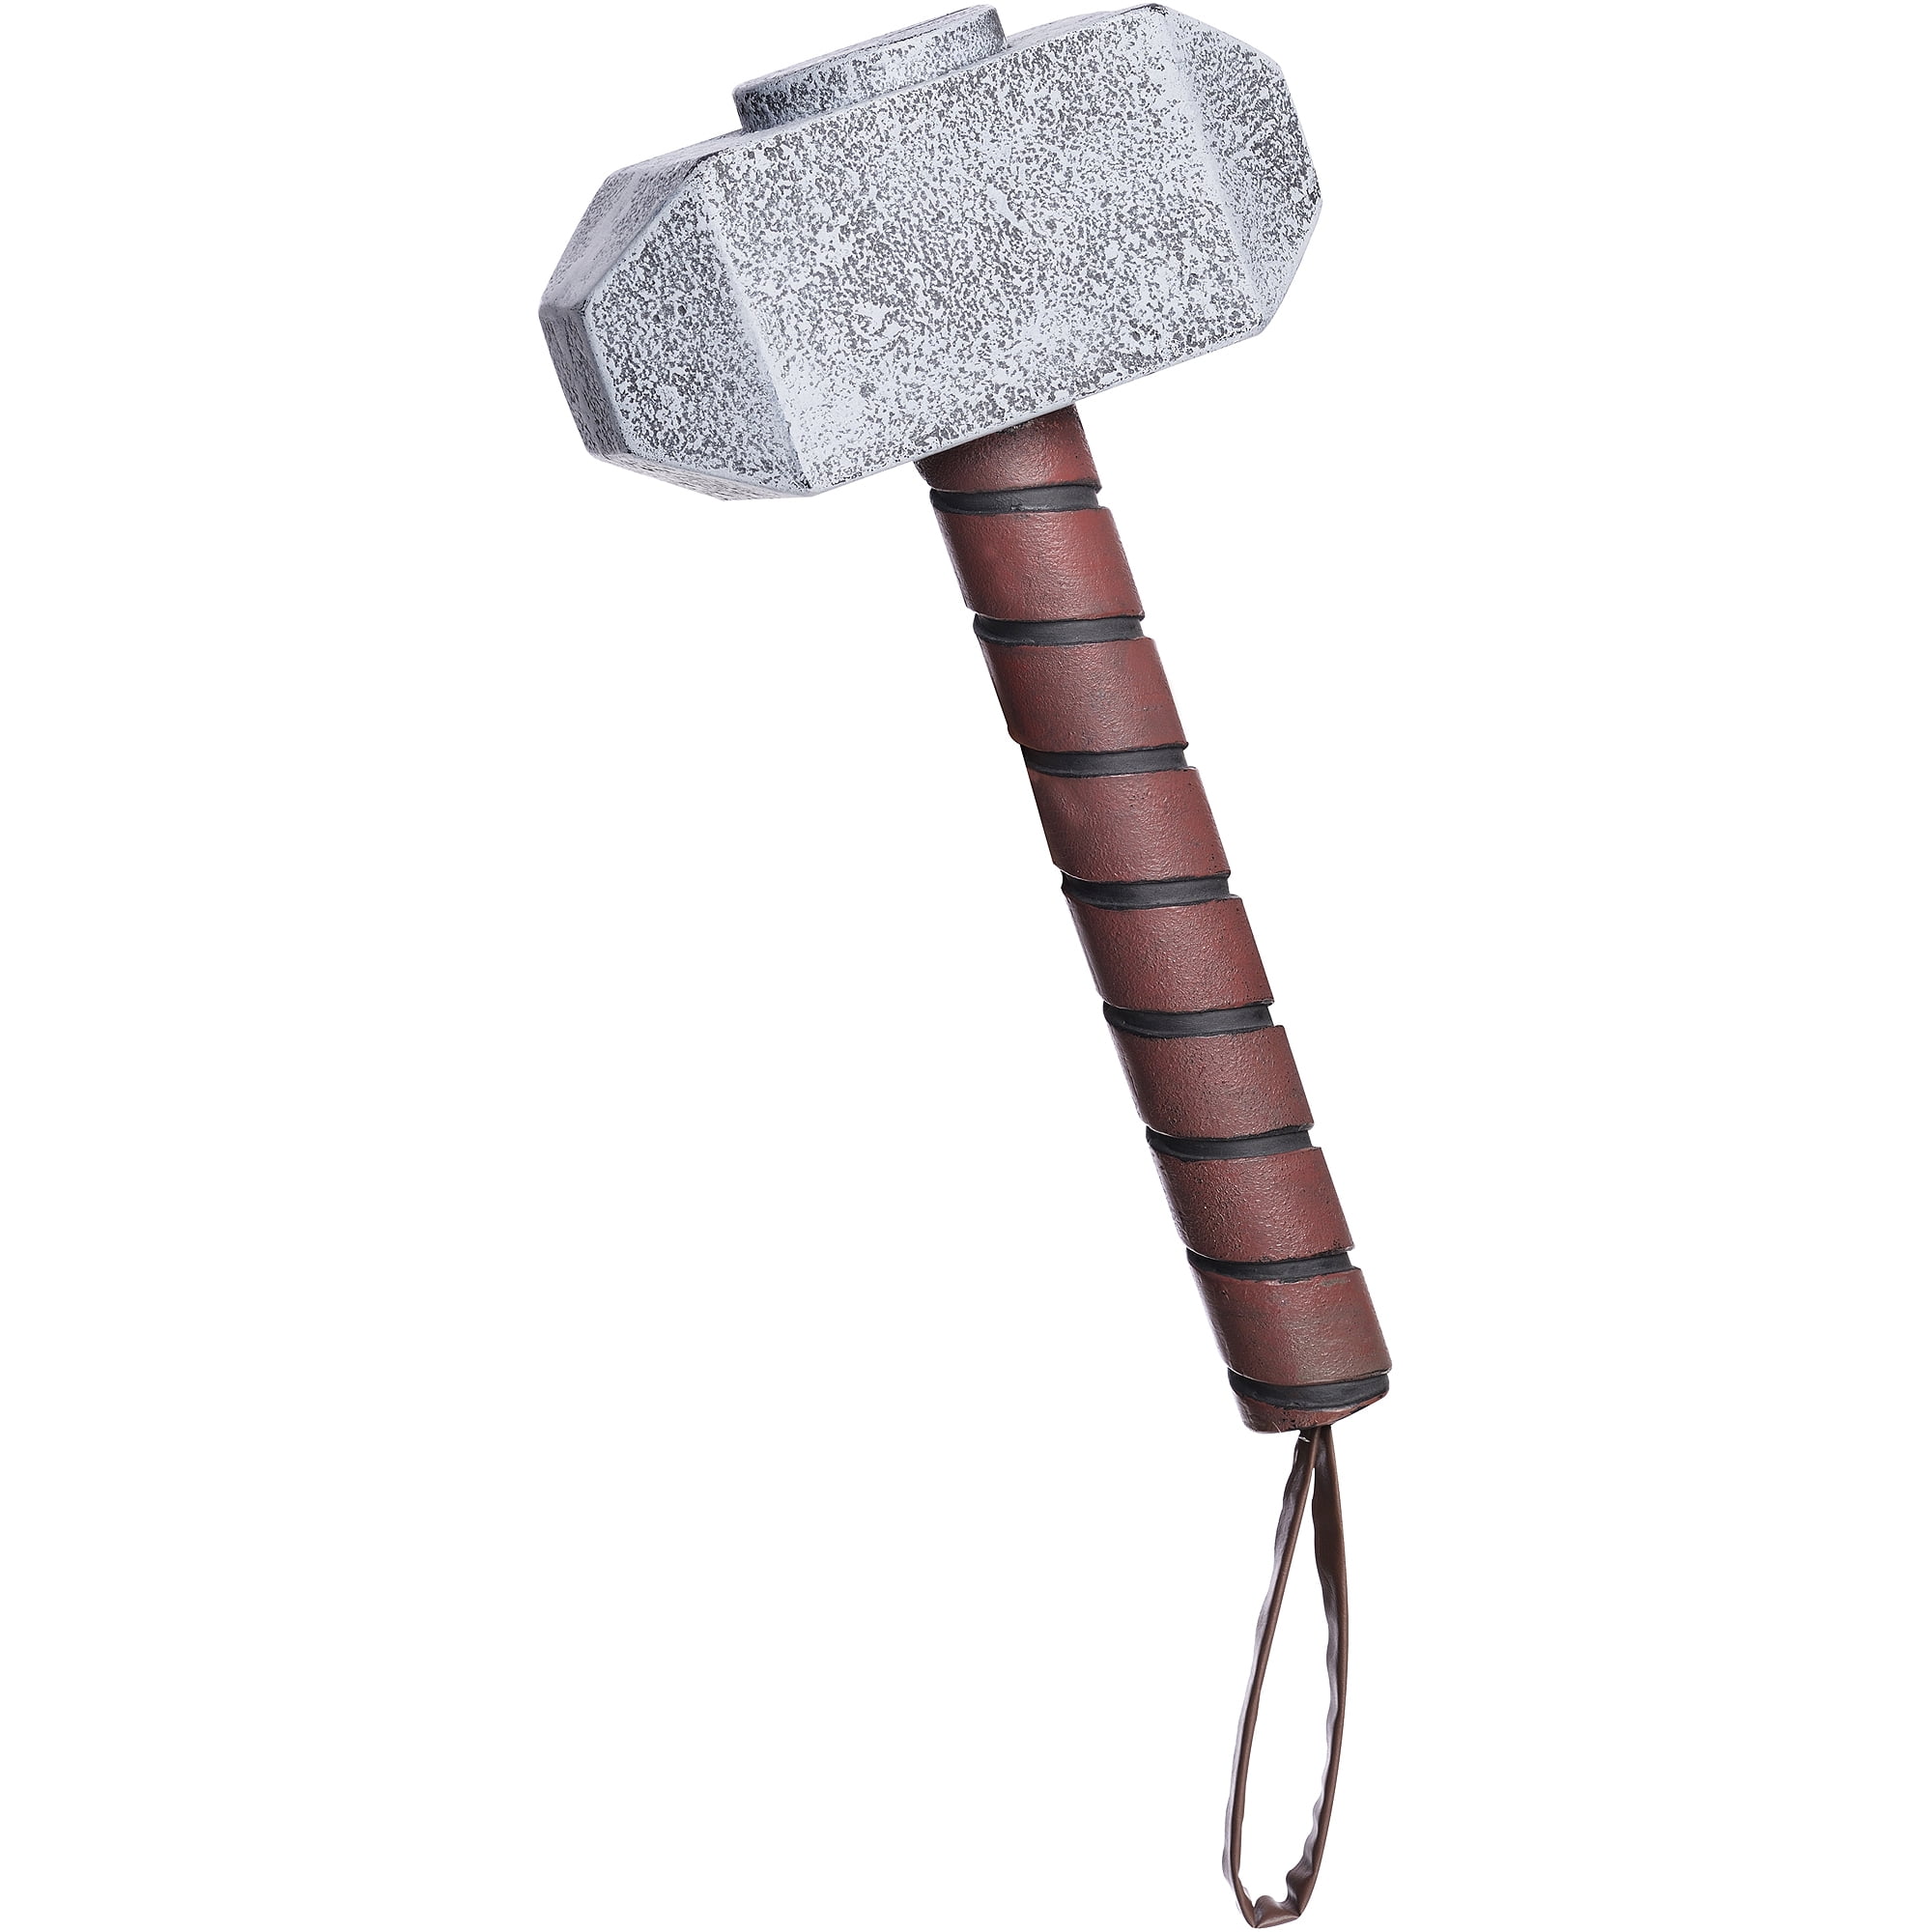 Bilderesultat for viking hammer